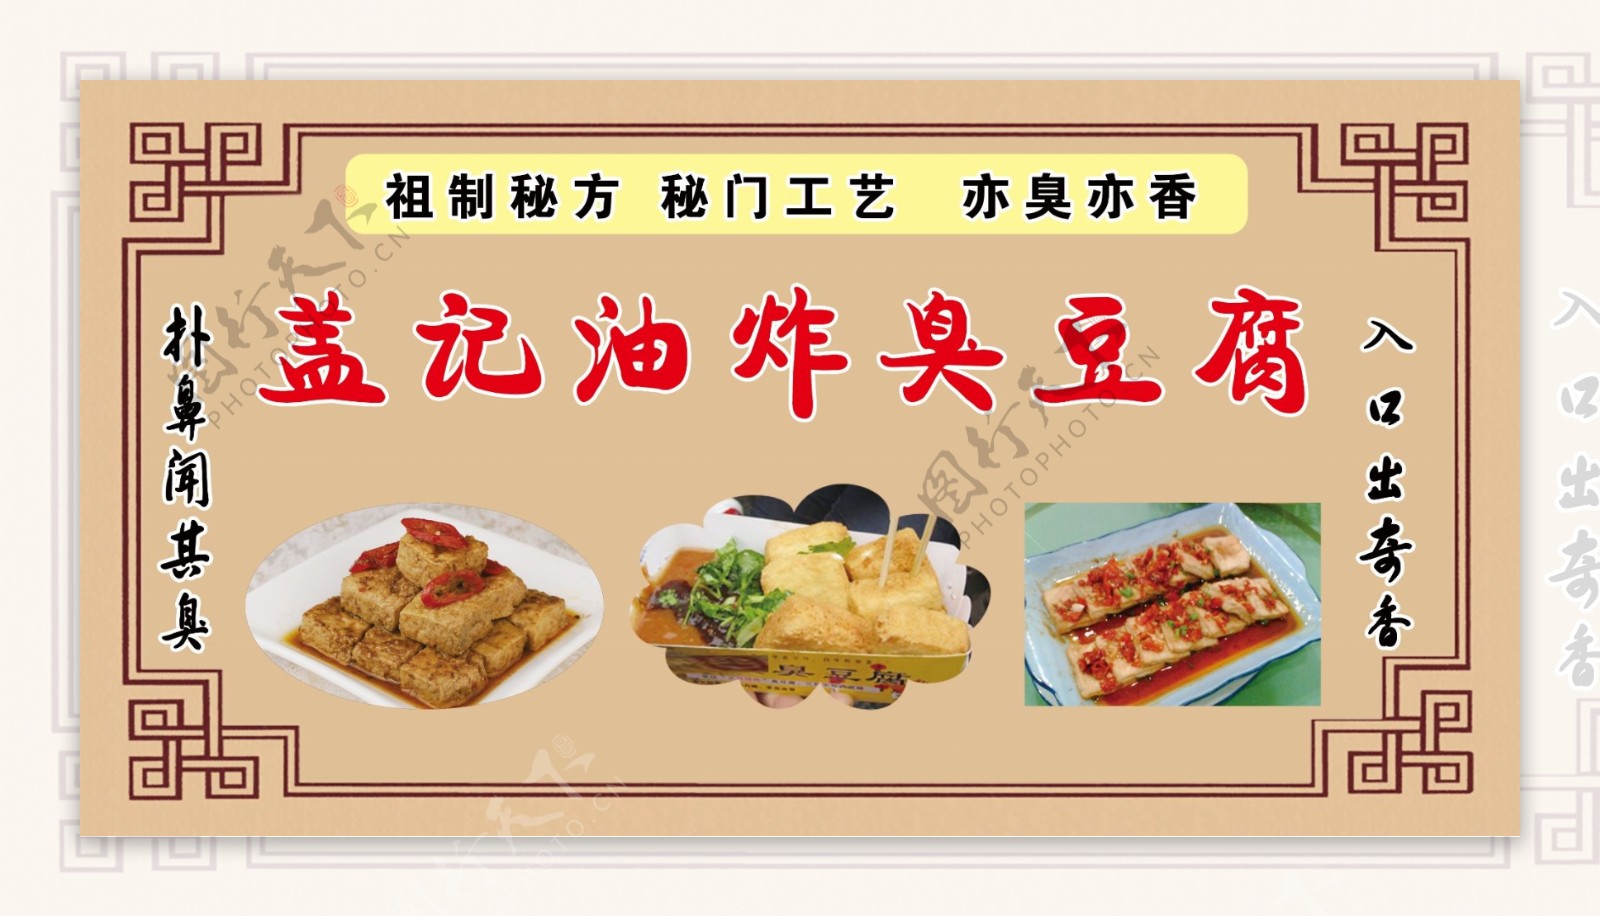 臭豆腐广告图